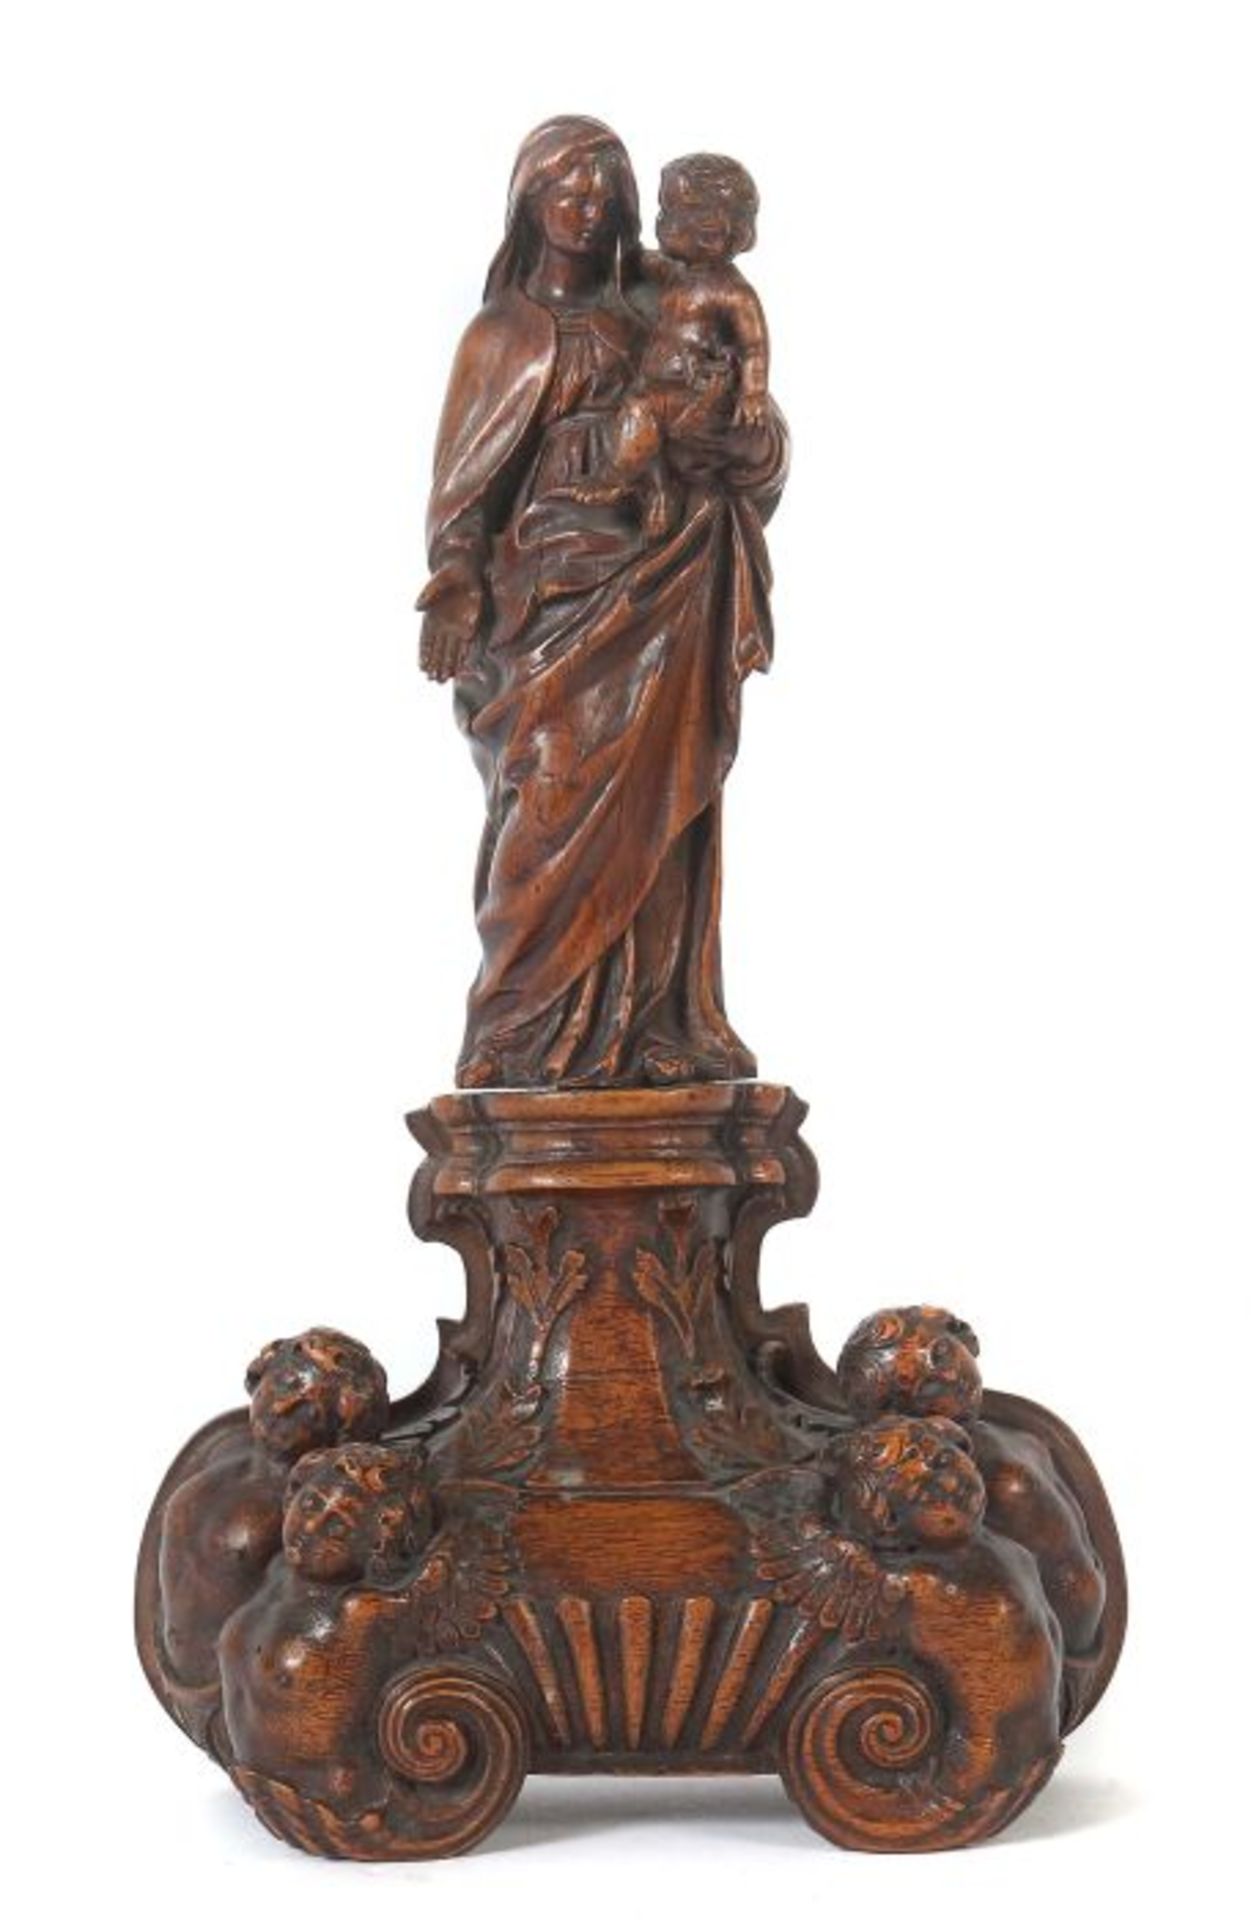 Bildschnitzer des 17. Jh. Süddeutsch, "Madonna mit Kind", Buxbaum geschnitzt, vollplastische Figur